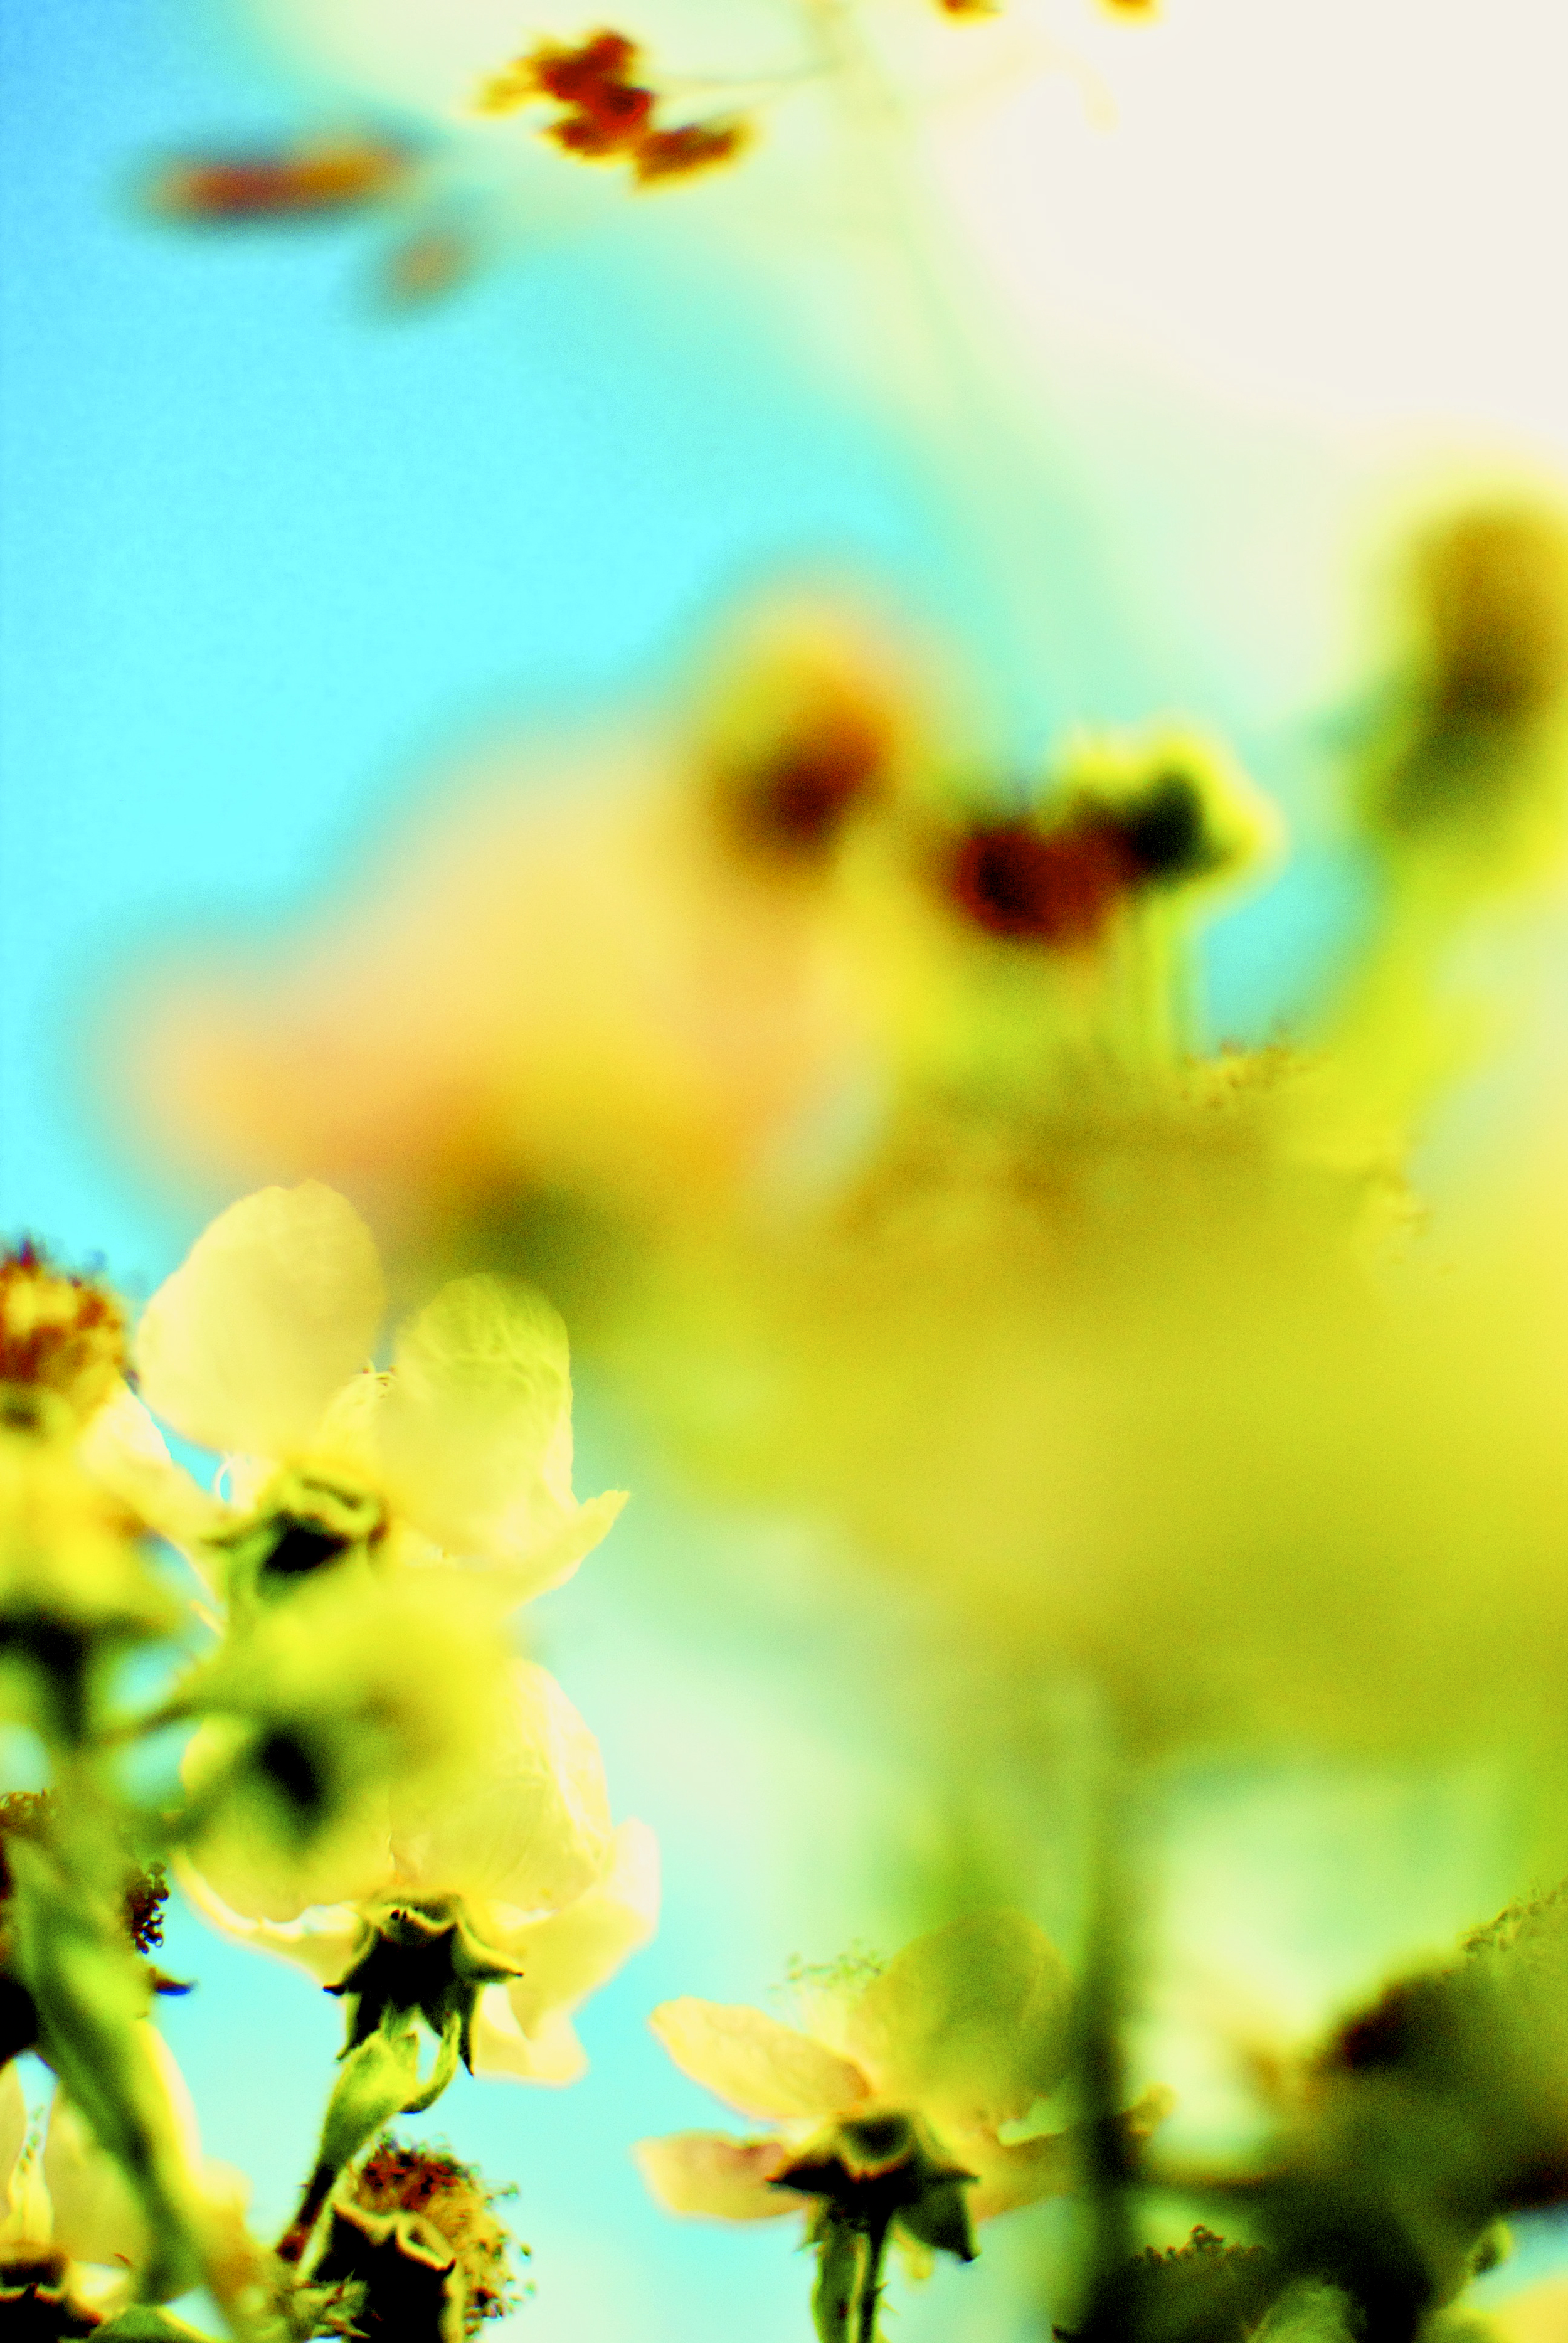 Blurred Yellow Rose.jpg